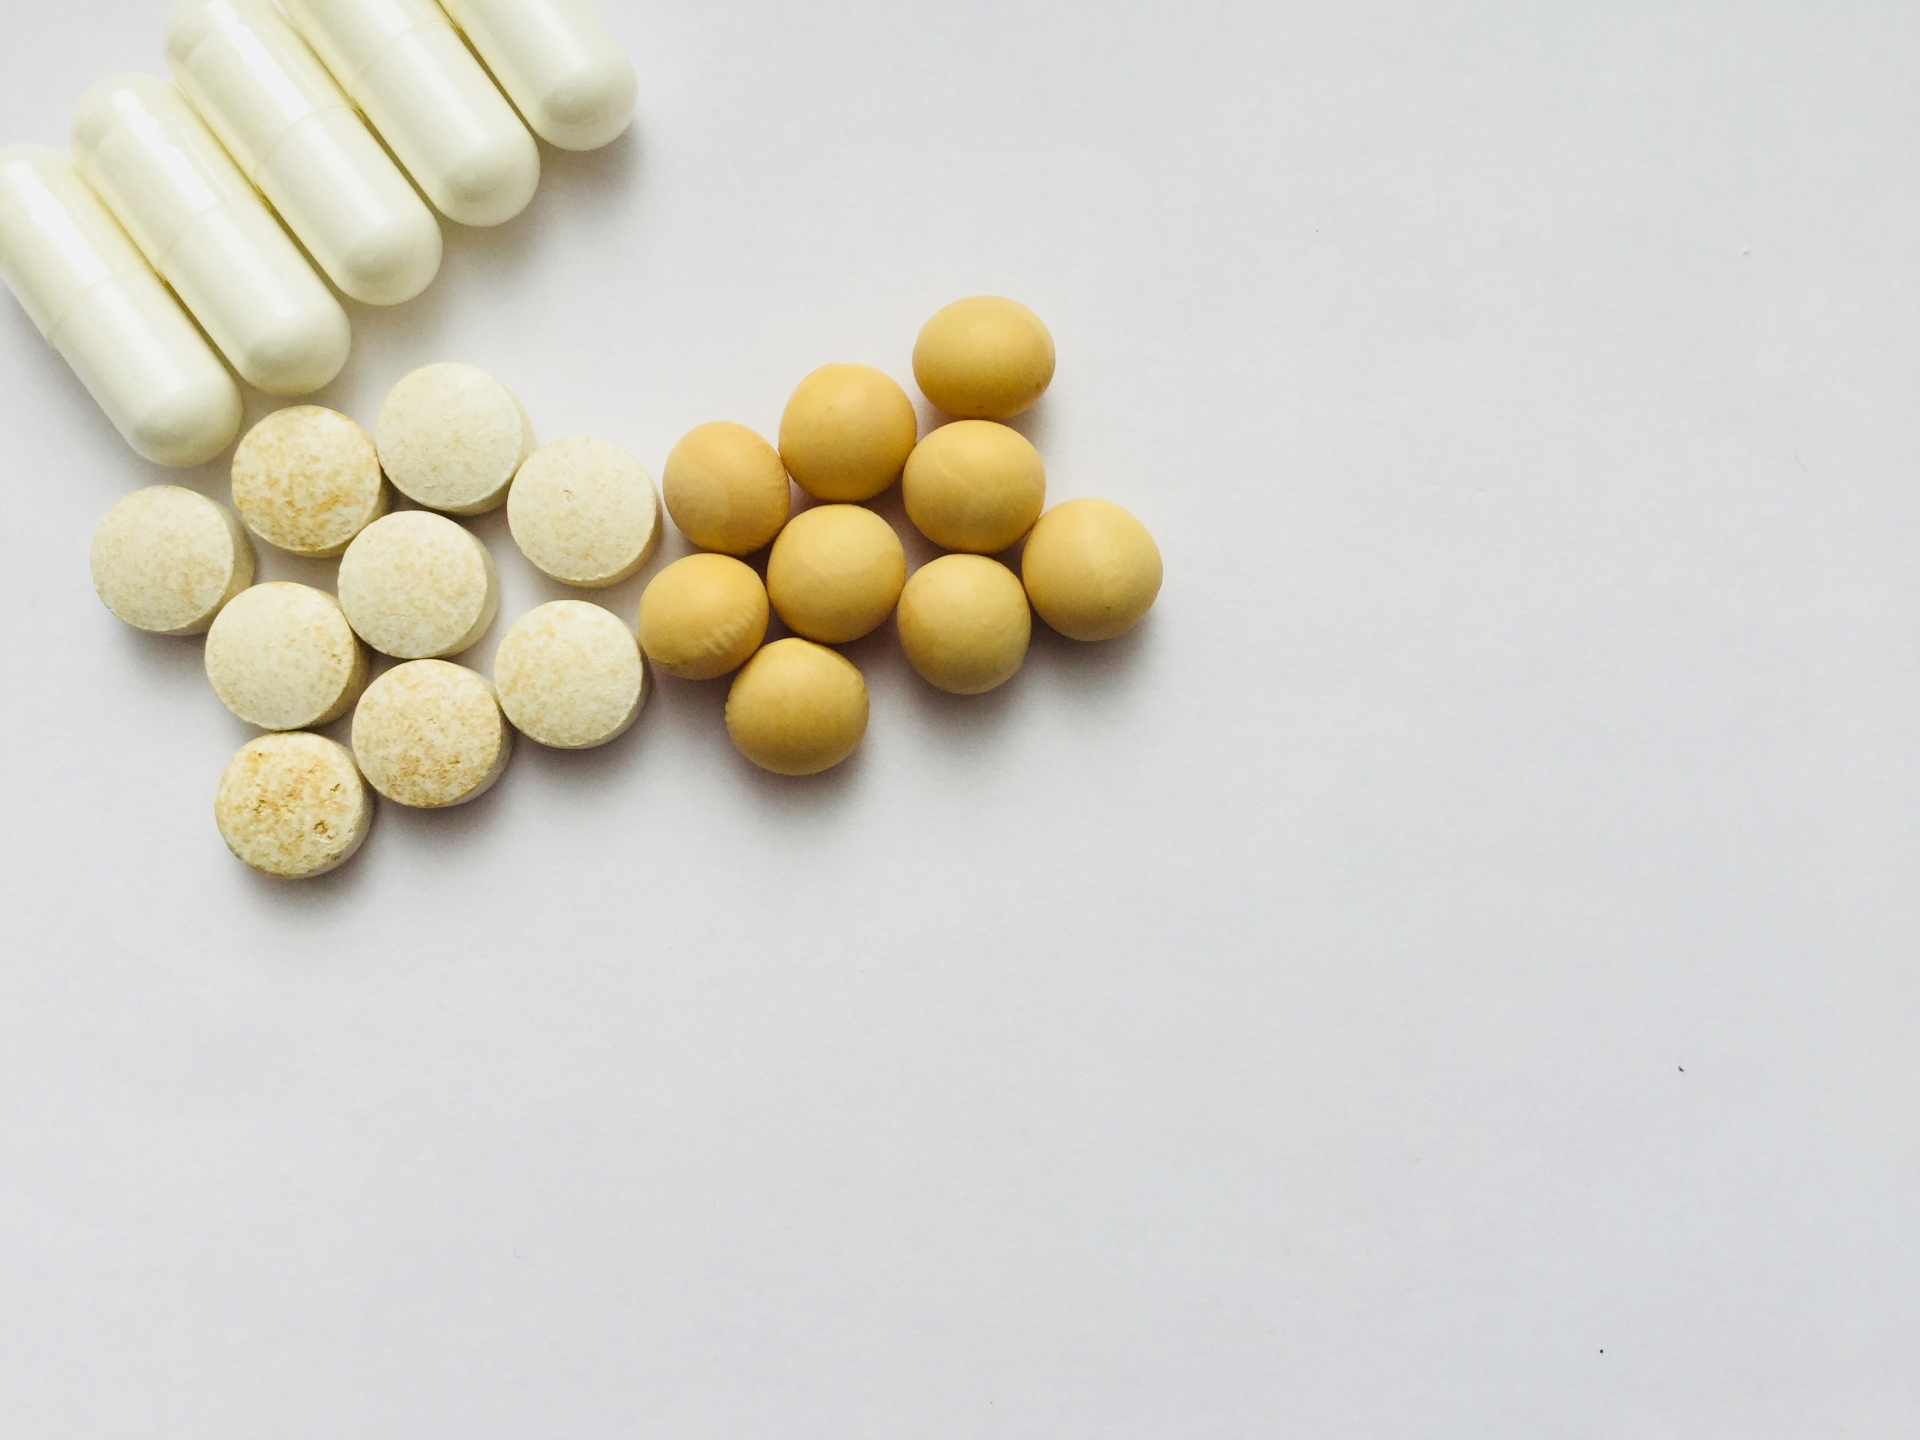 ホルモン療法中にイソフラボンは摂るべきか摂らざるべきか